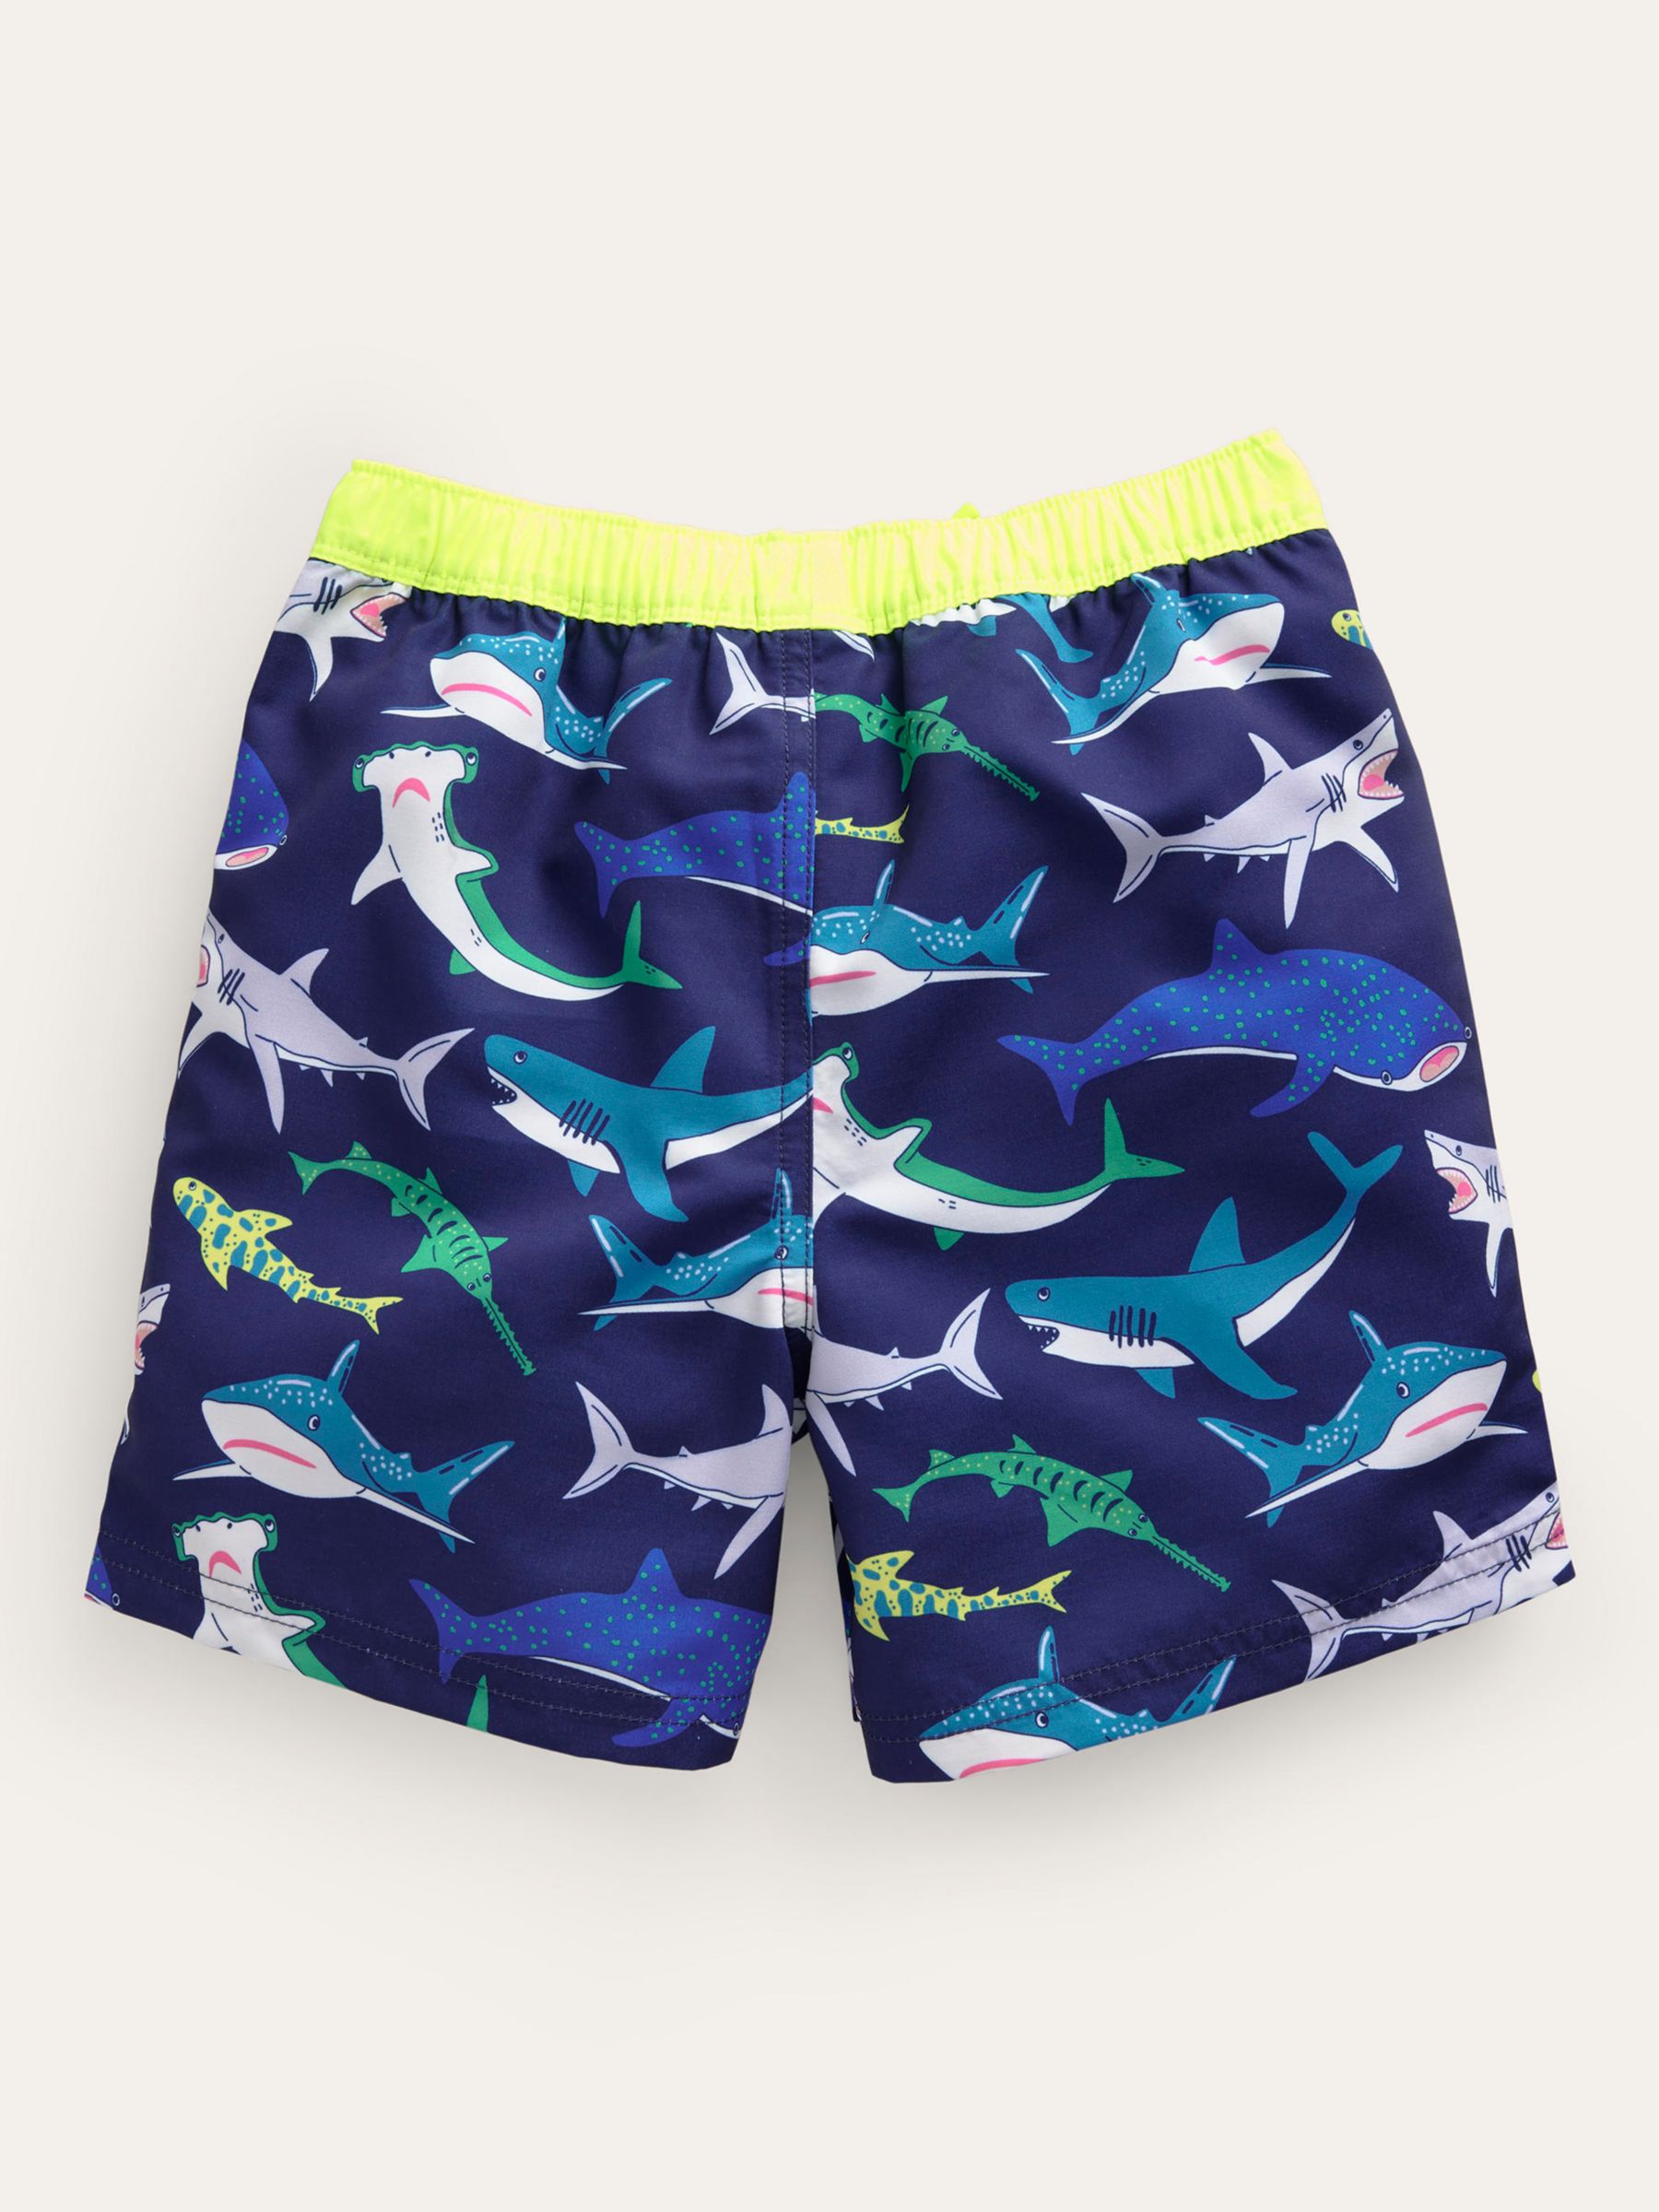 Mini Boden Kids' Printed Swim Shorts, Multi Sharks at John Lewis & Partners